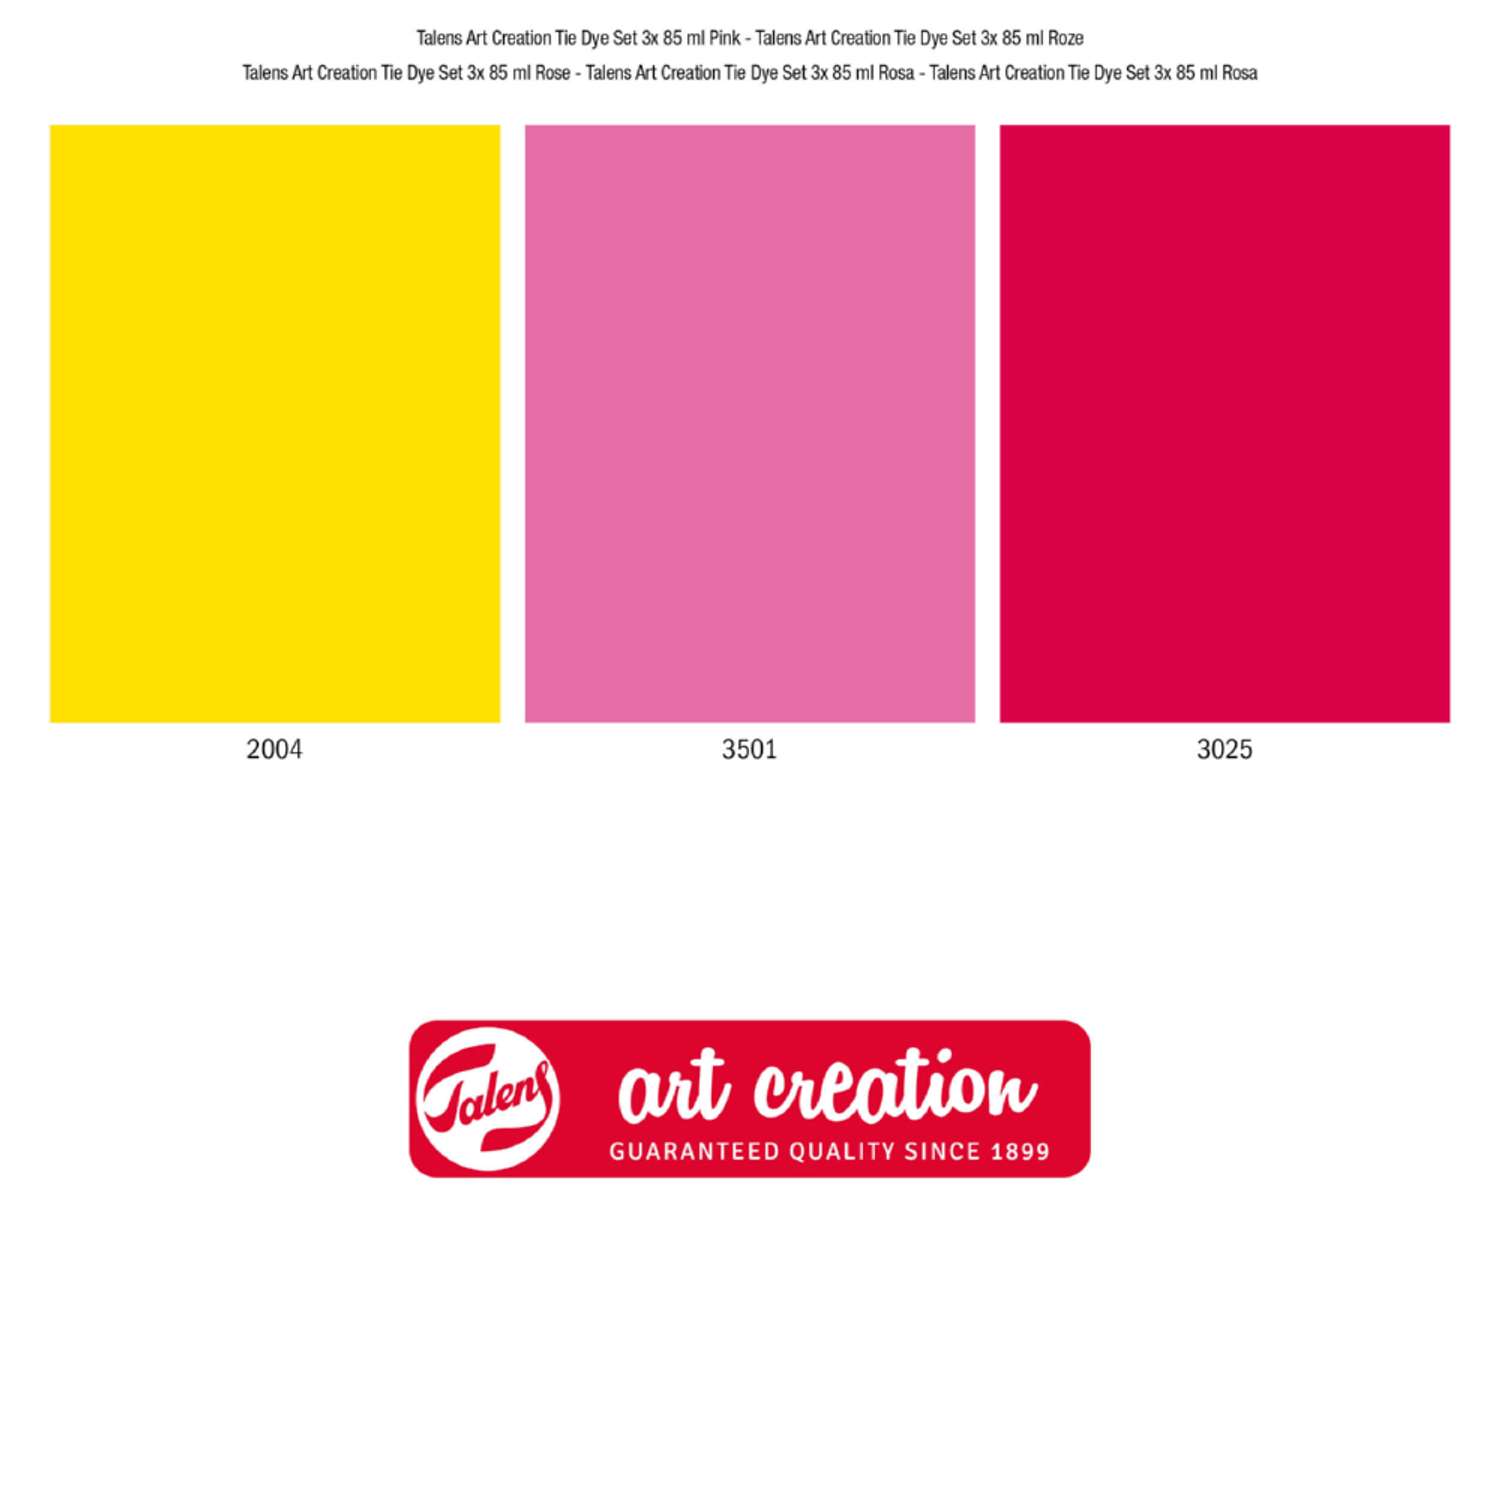 Набор красок для текстиля Talens Art Creation Tie-dye 3 цвета оттенки розового в тубах по 85мл и перчатки в картонной упаковке - фото 4